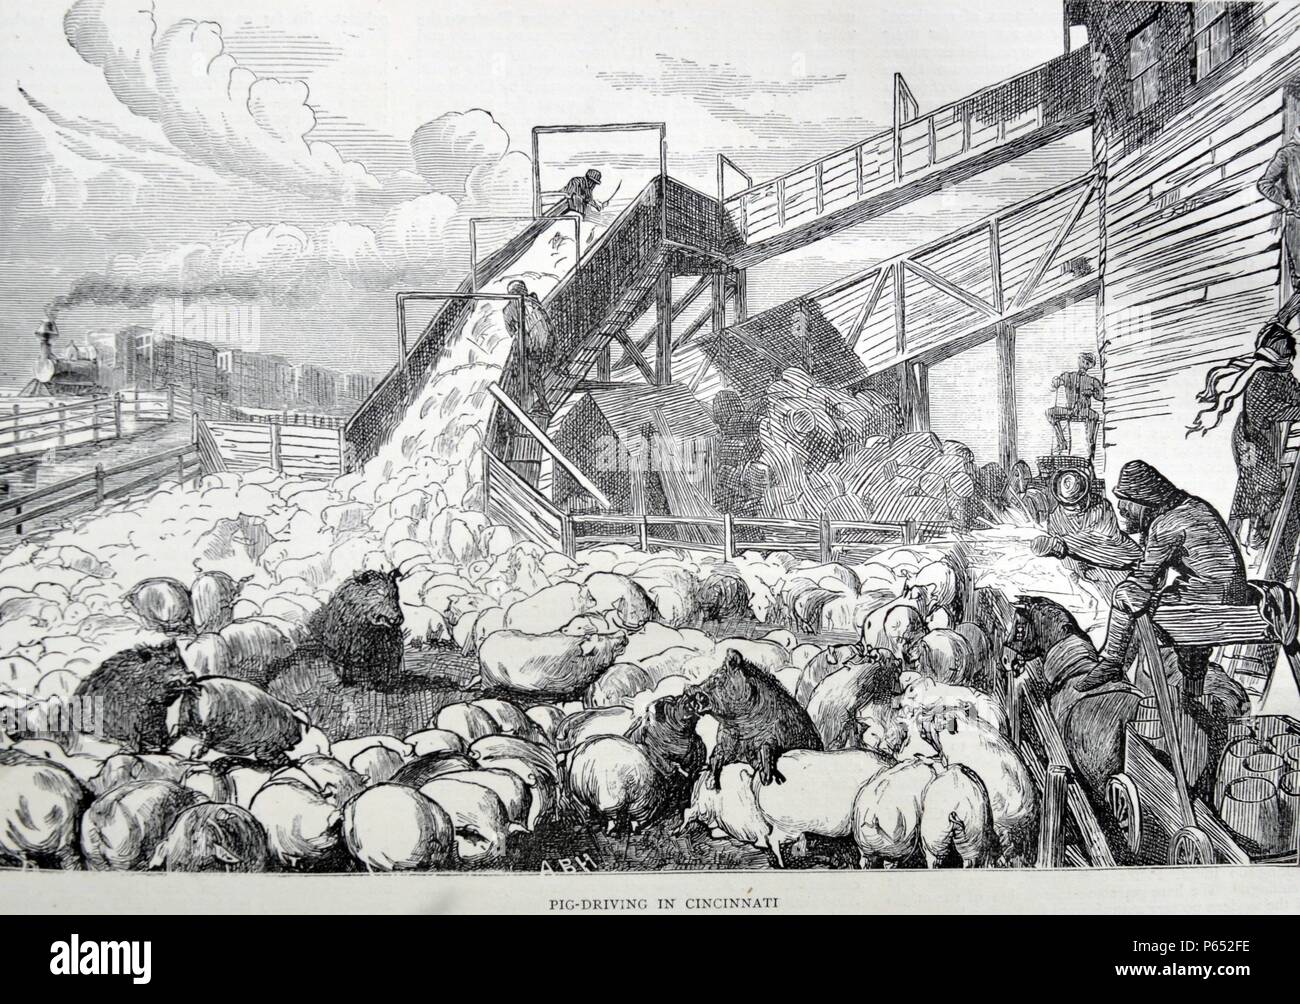 Gravure représente la conduite des porcs à Cincinnati. Datée 1870 Banque D'Images